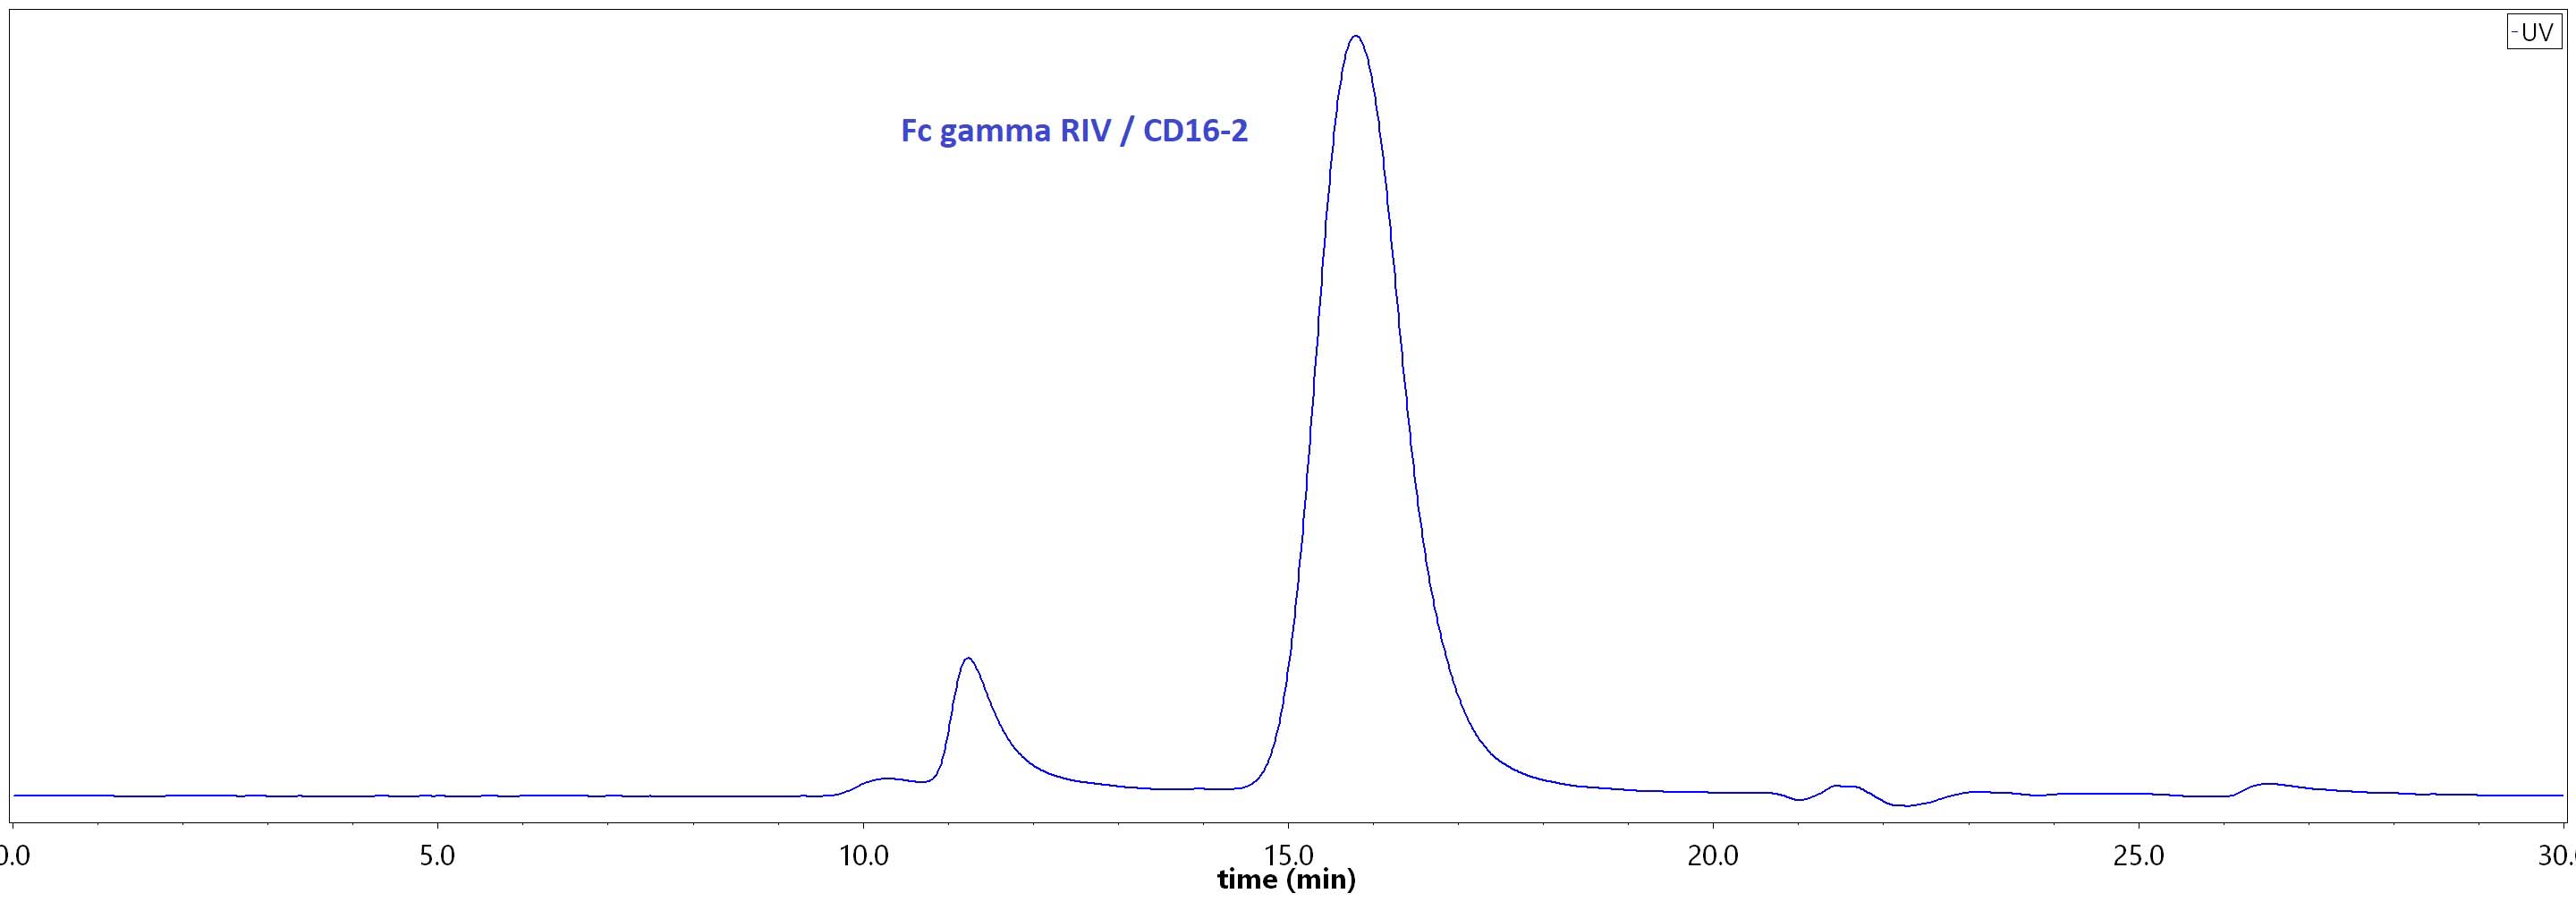 Fc gamma RIIIA / CD16a SEC-HPLC